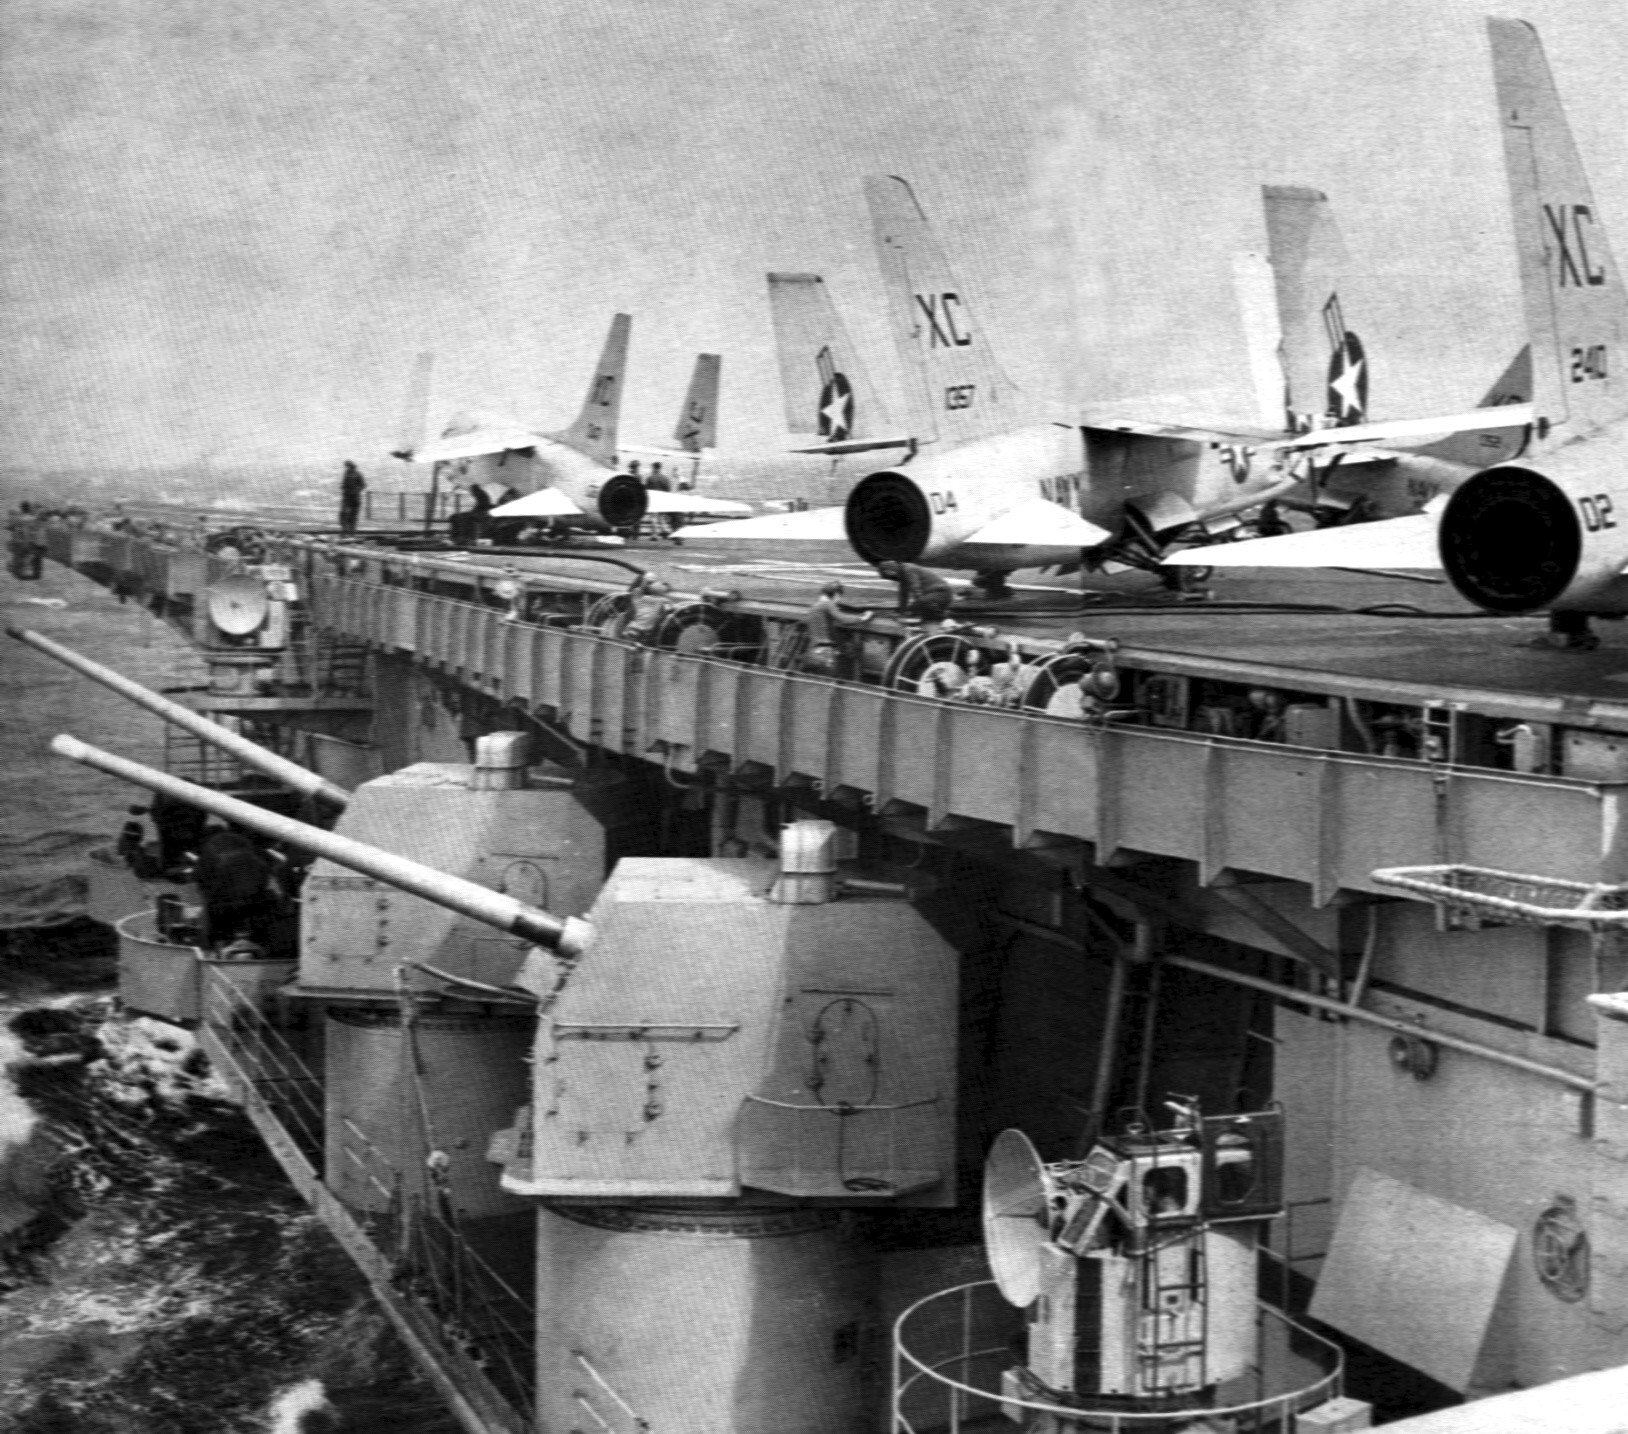 cva-42 uss franklin d. roosevelt midway class aircraft carrier mark 16 5" 54 caliber gun turrets